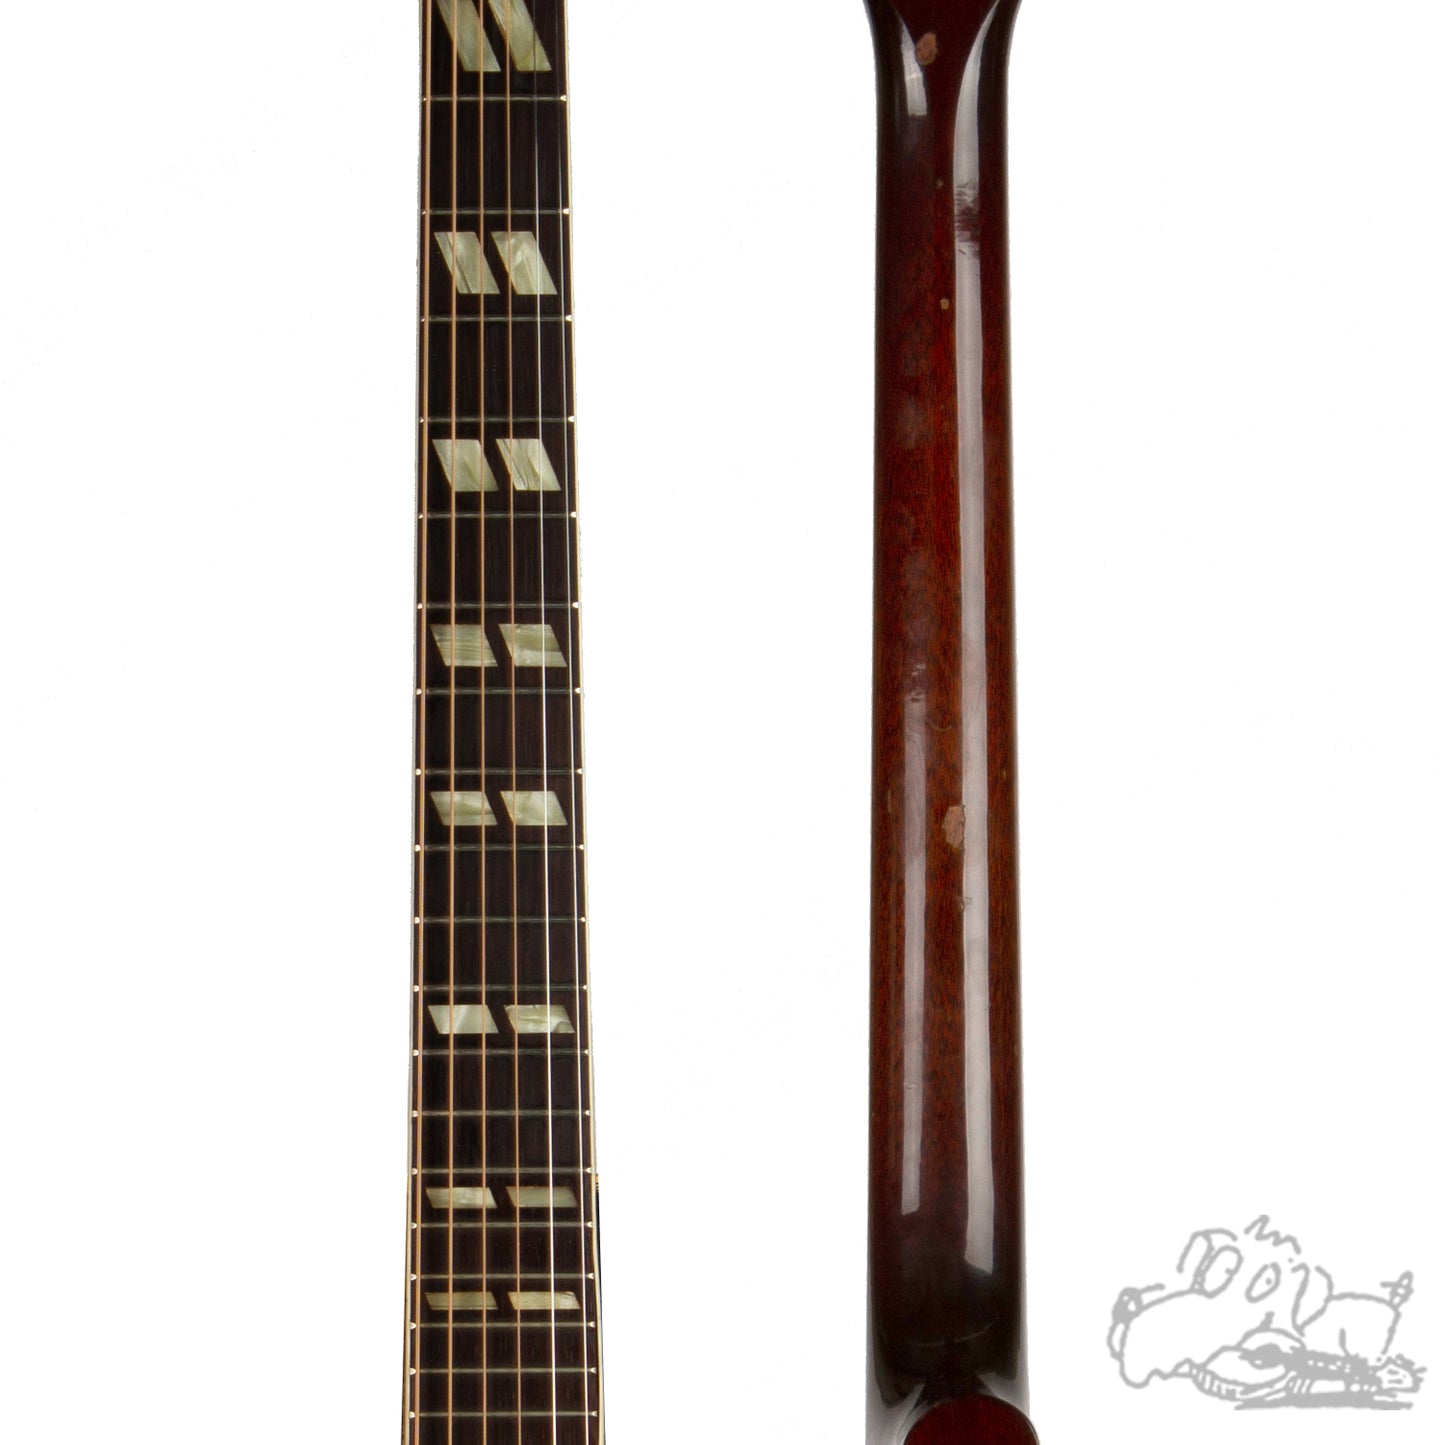 1957 Gibson Southern Jumbo